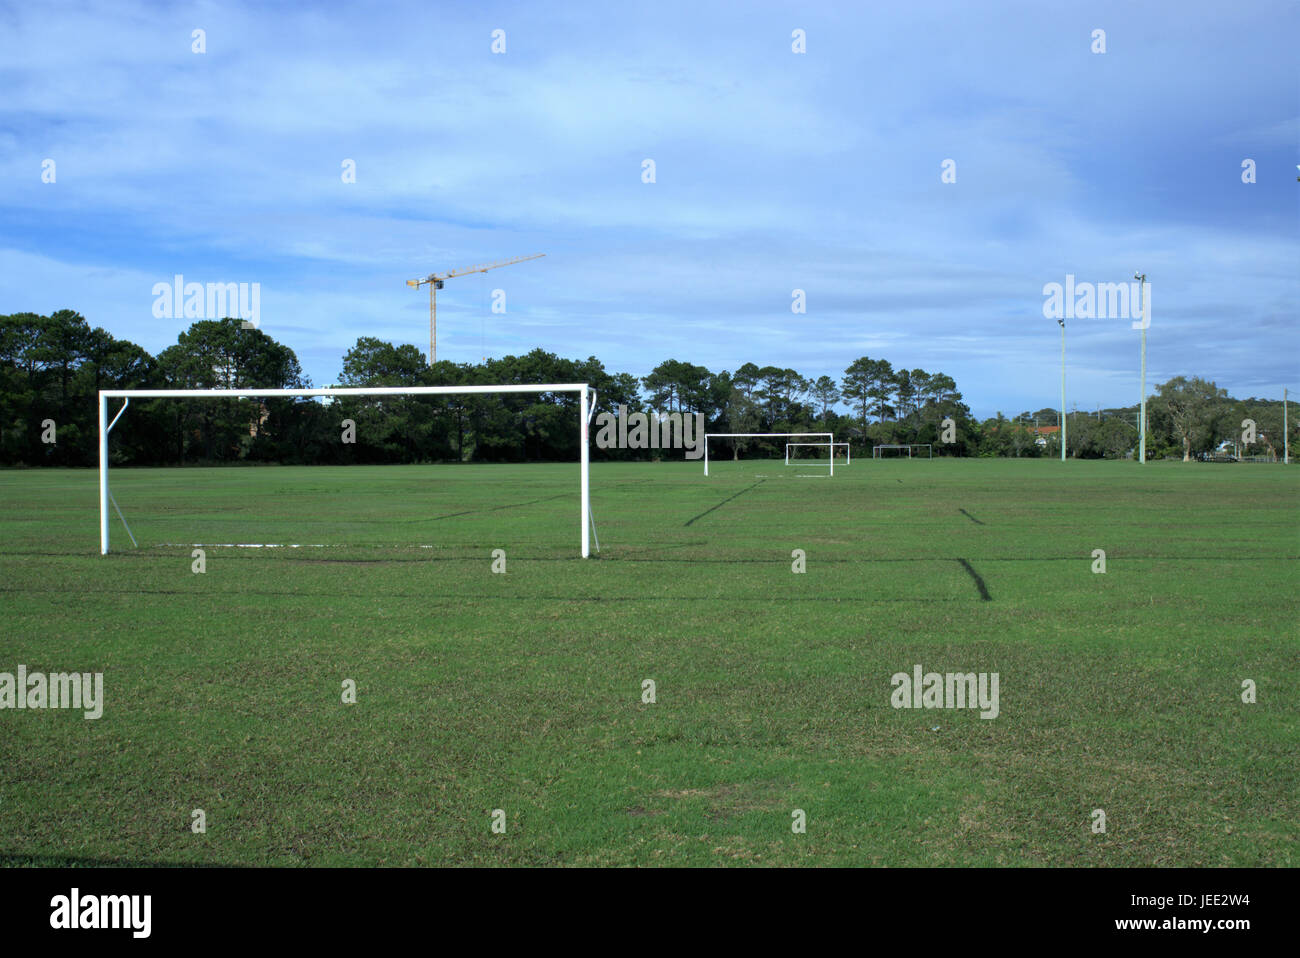 Juegos de fútbol en Australia. Juegos de fútbol con la portería, luces de inundación, árboles y una grúa en la distancia. Foto de stock